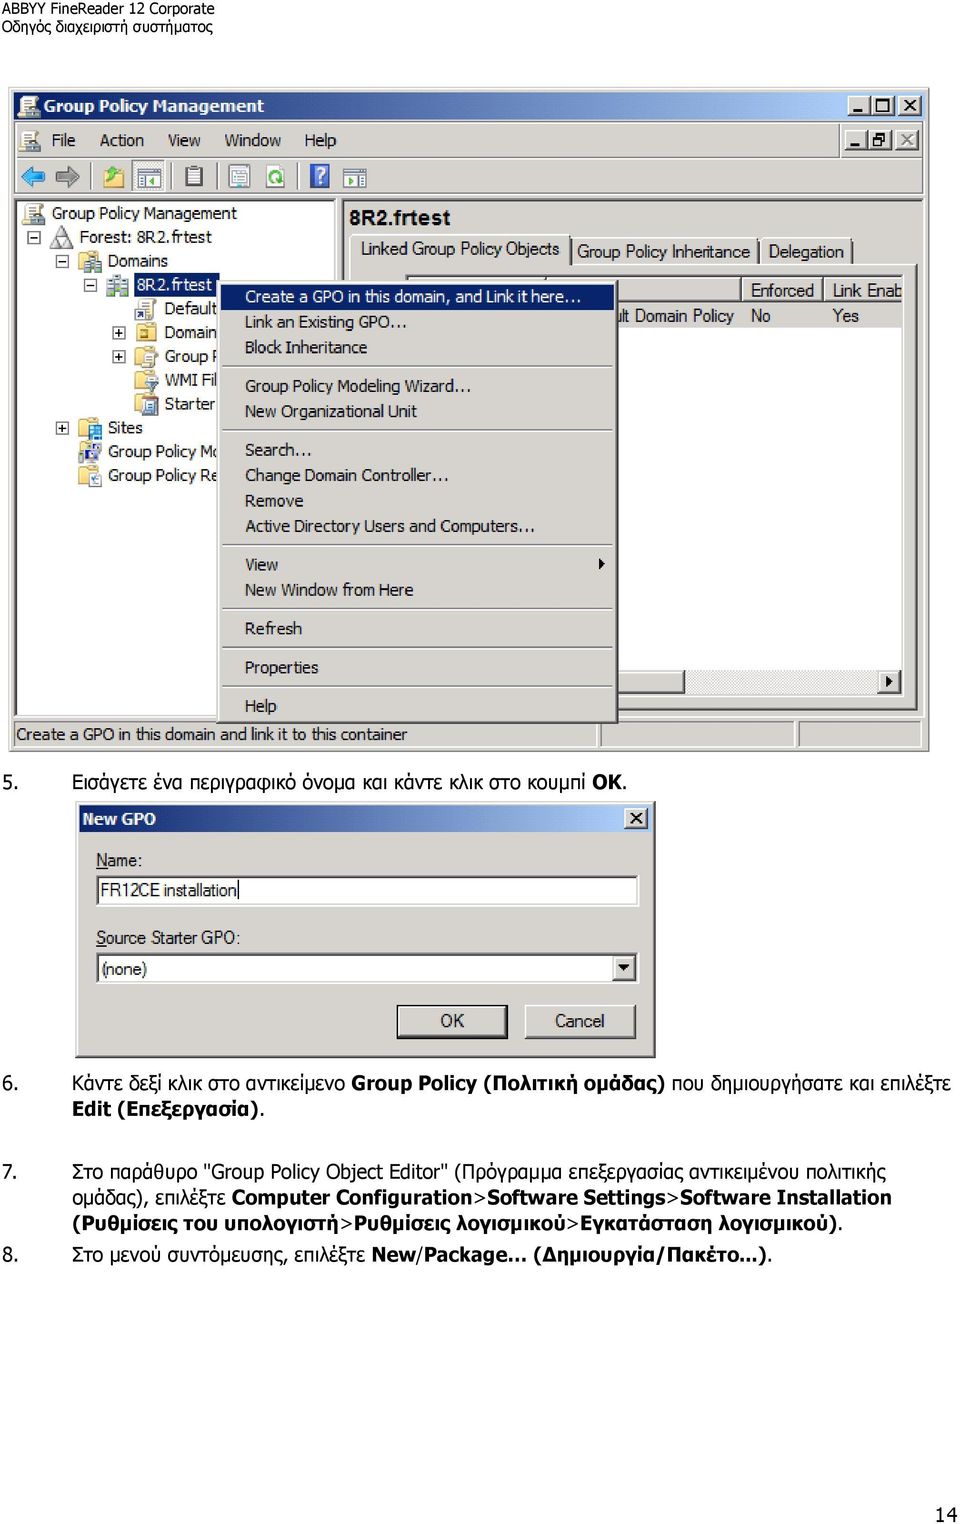 Στο παράθυρο "Group Policy Object Editor" (Πρόγραμμα επεξεργασίας αντικειμένου πολιτικής ομάδας), επιλέξτε Computer